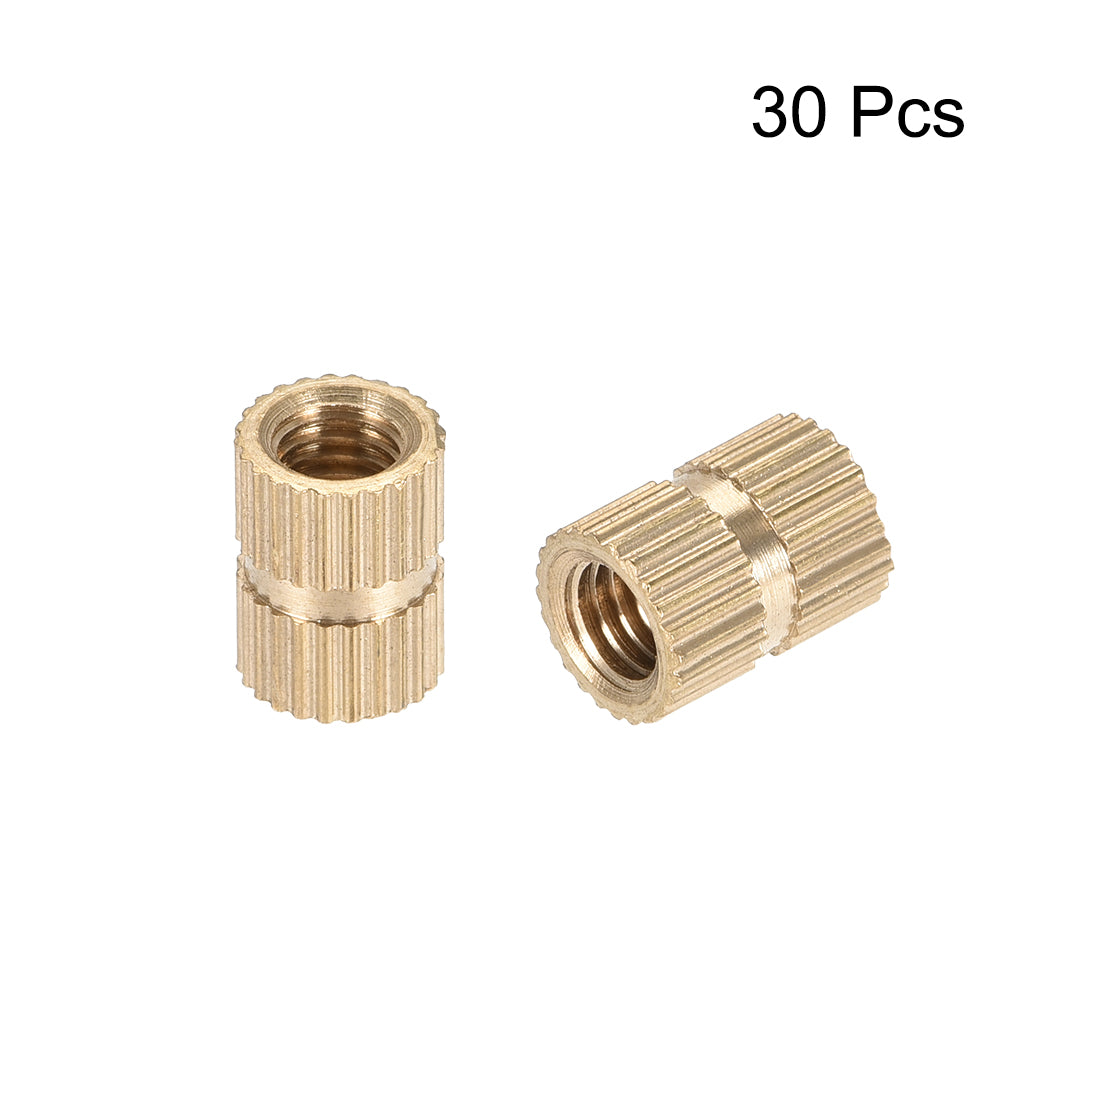 uxcell Uxcell Knurled Insert Nuts, M5 x 10mm(L) x 7mm(OD) Female Thread Brass Embedment Assortment Kit, 30 Pcs